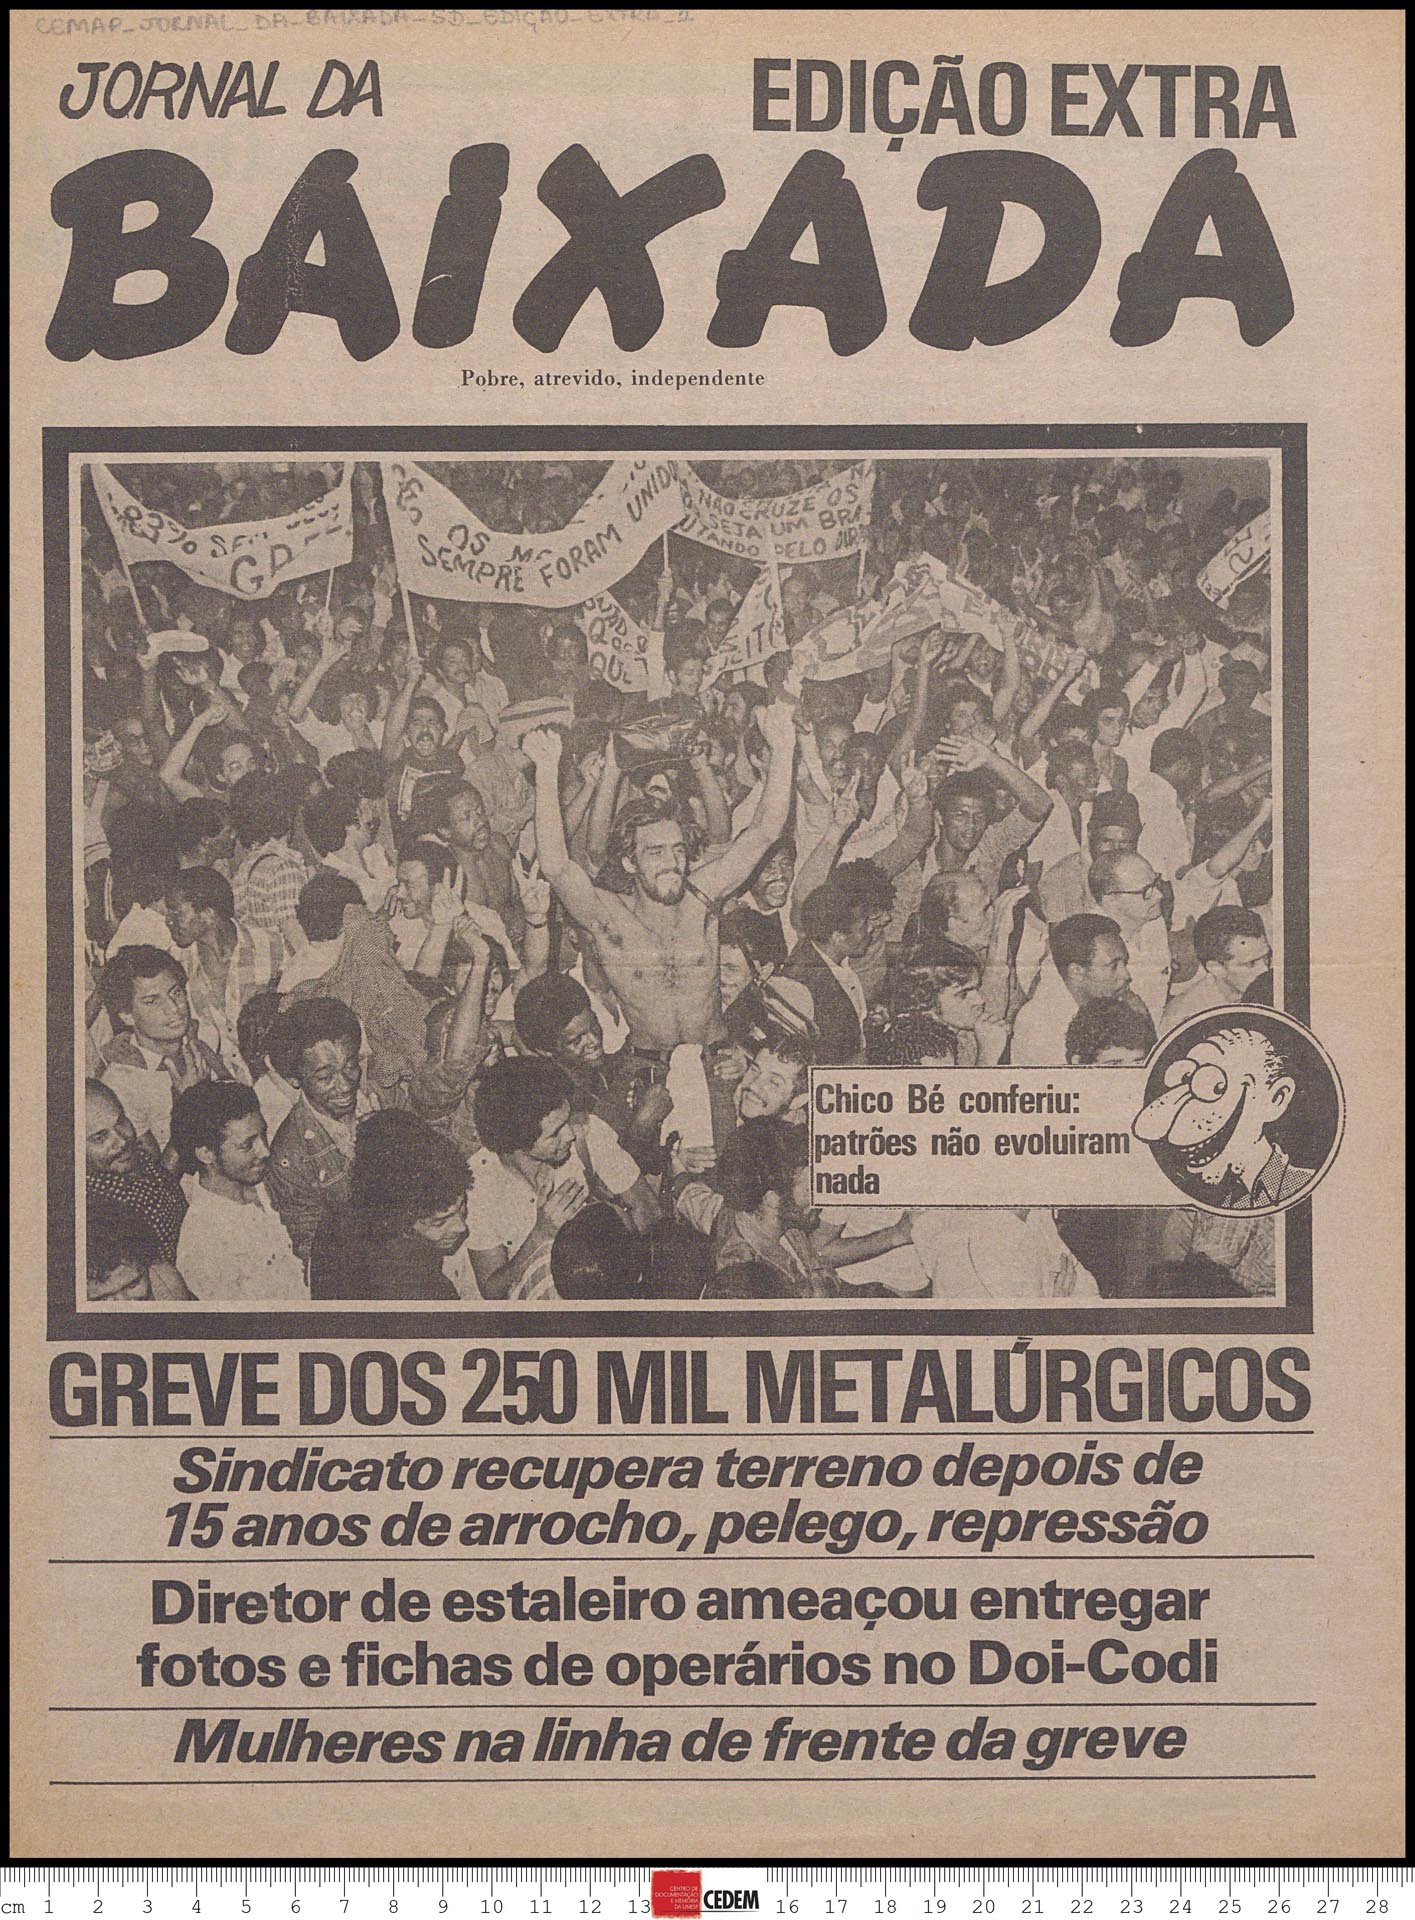 Capa do Jornal da Baixada, edição extra